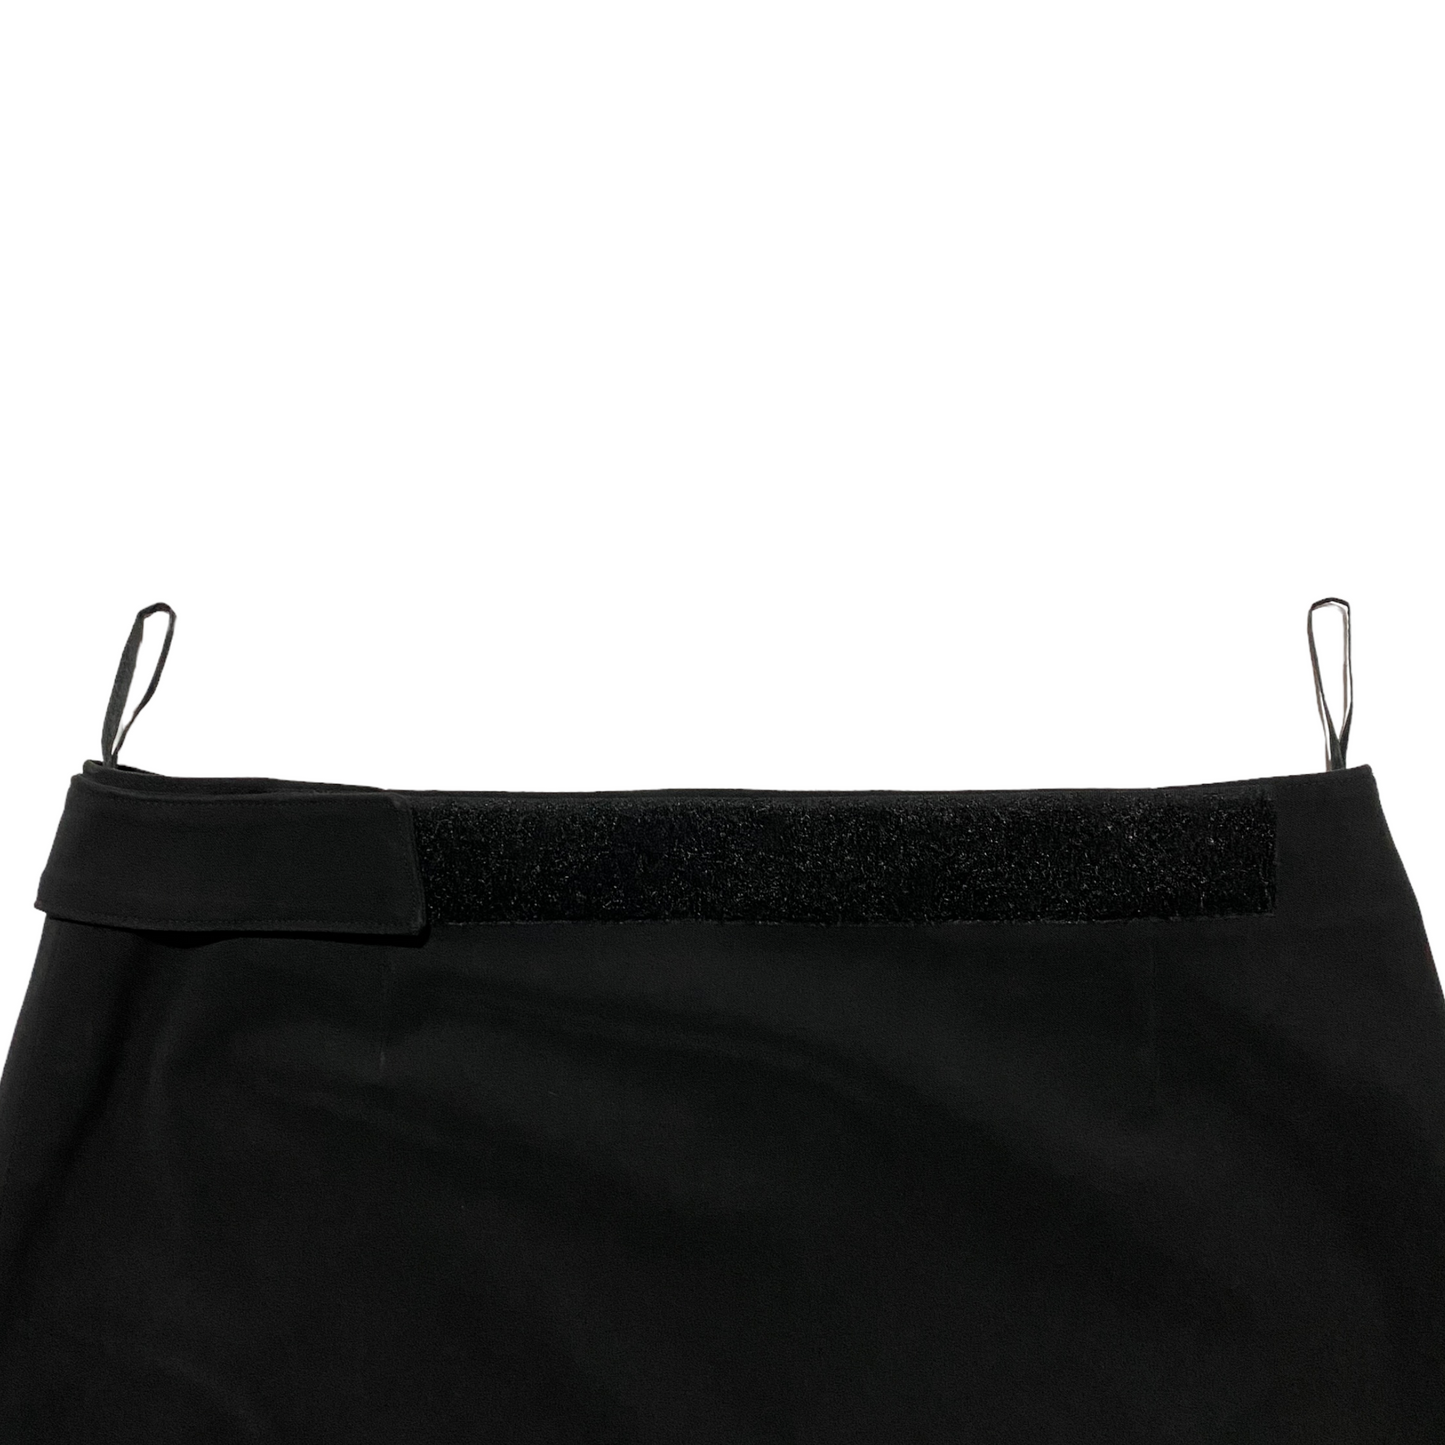 1998 Prada Adjustable Waist Knee Skirt (38W)